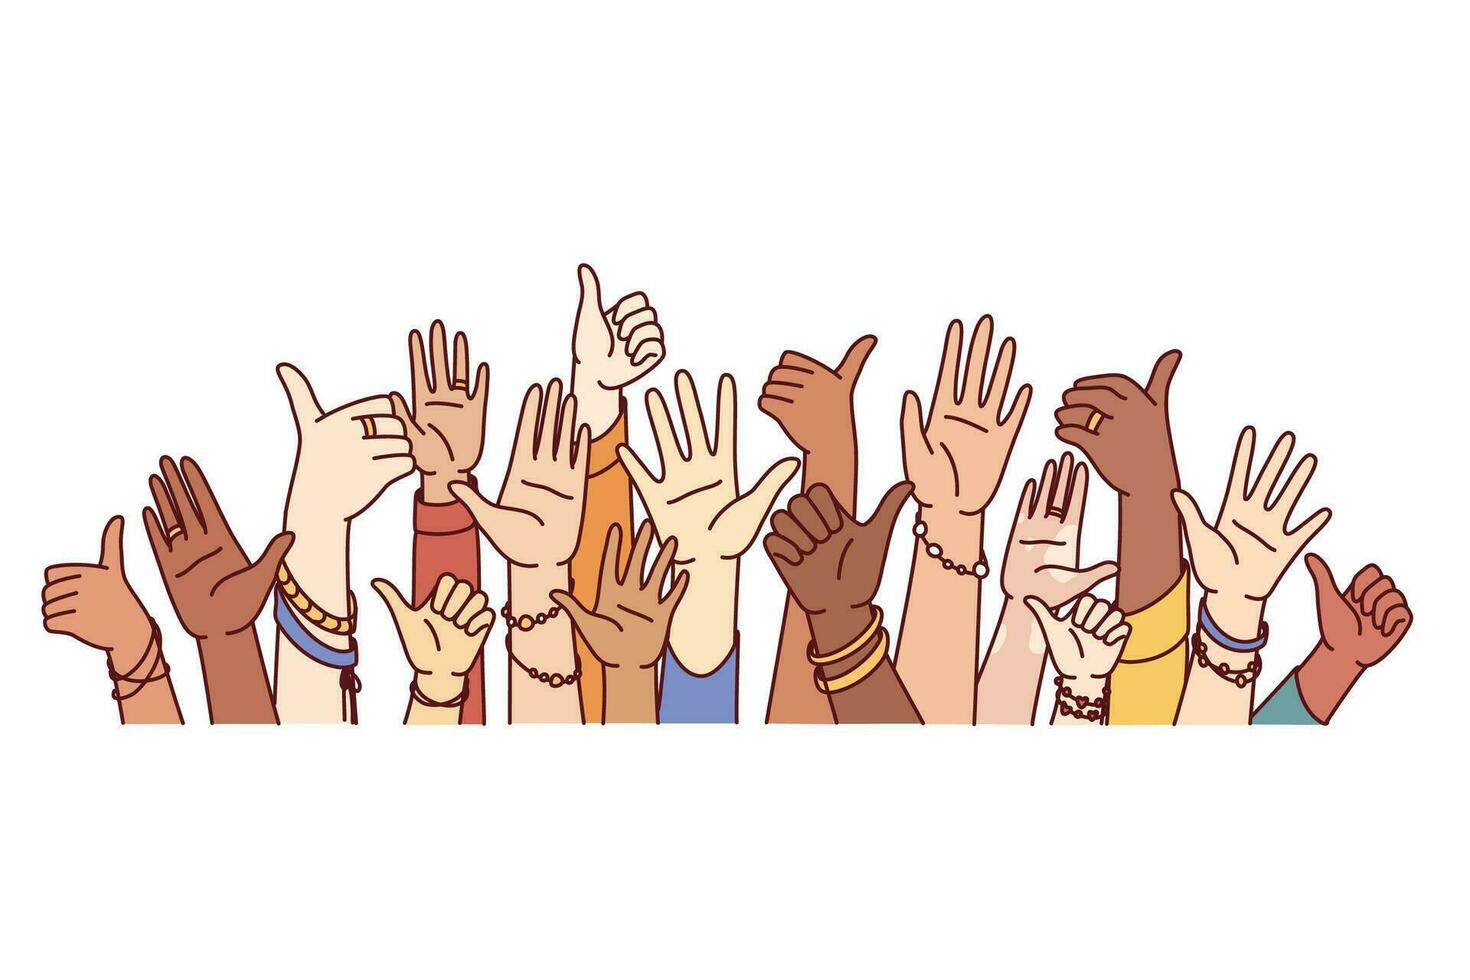 händer av olika människor som visar tummen upp eller hälsning gester symbolisera enhet och harmoni i samhälle. händer av folkmassan multietnisk män och kvinnor förenad till bekämpa mot diskriminering och intolerans vektor